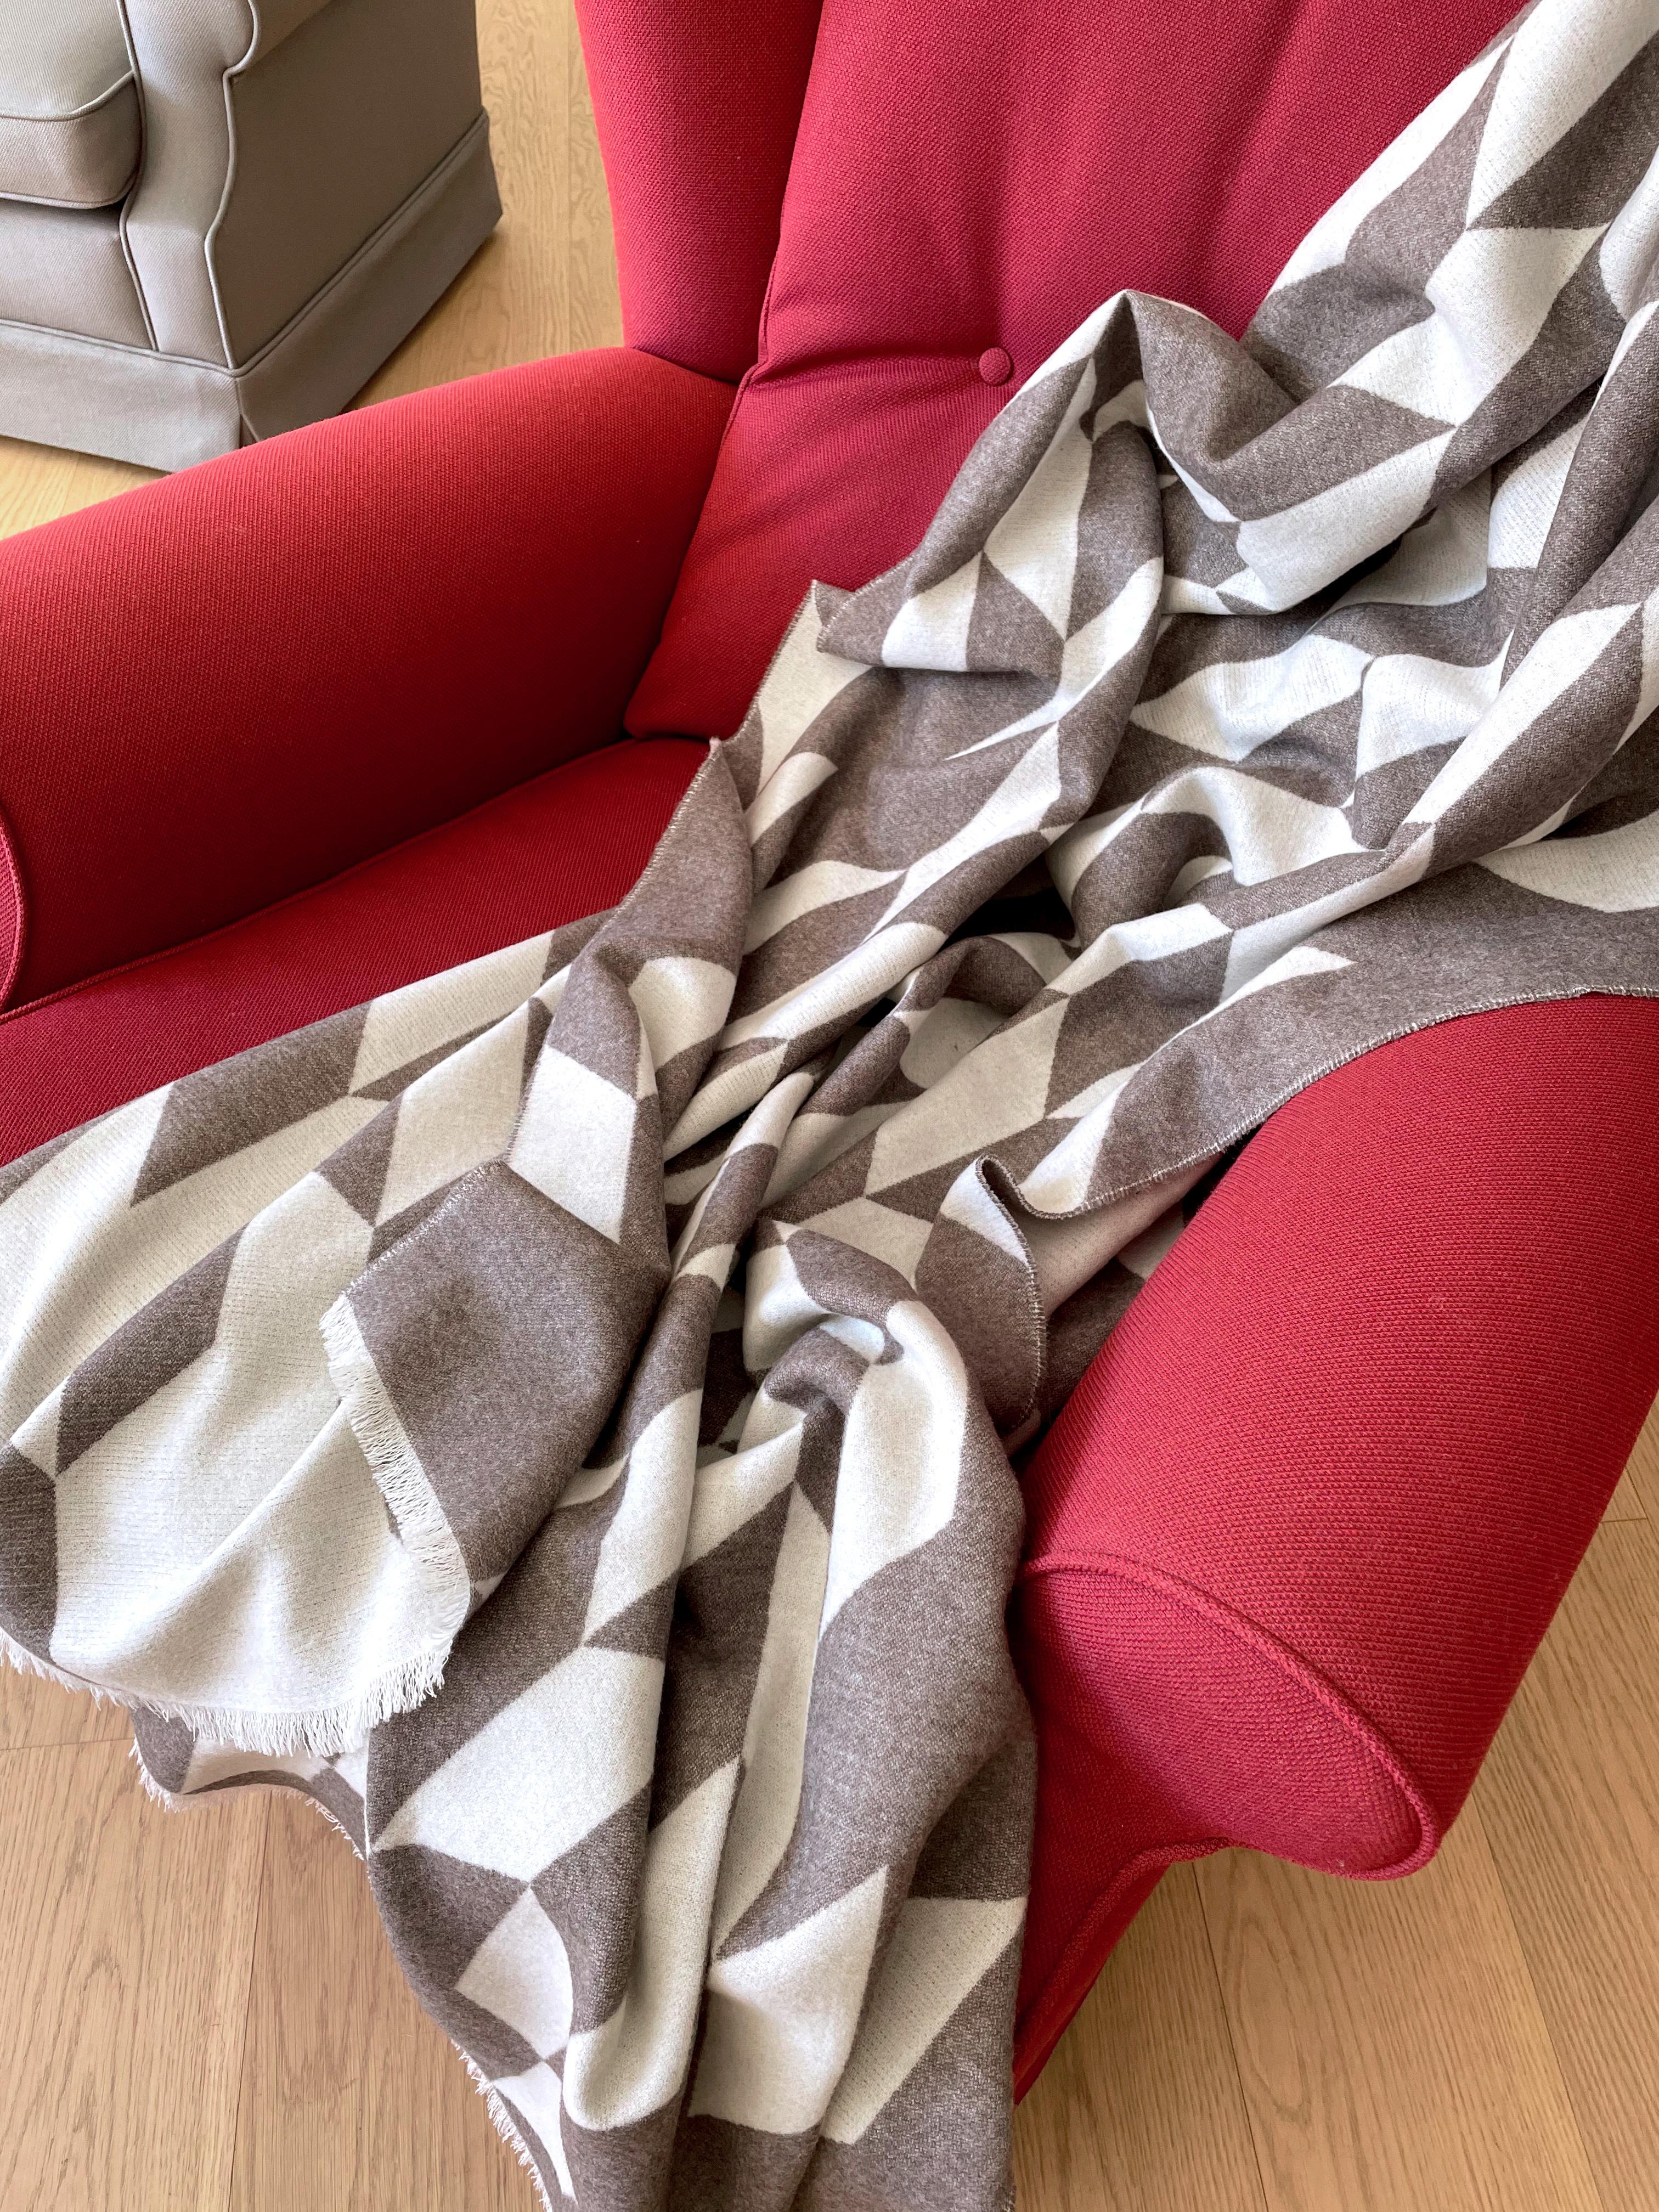 Entworfen in Berlin von Catharina Mende, gewebt aus 100% extrafeiner Merino in Schottland: Diese luxuriöse und schmeichelhafte Decke ist die perfekte Kombination aus Farbe, Form und Material für jede Tages- und Jahreszeit. Dieses exquisite Stück